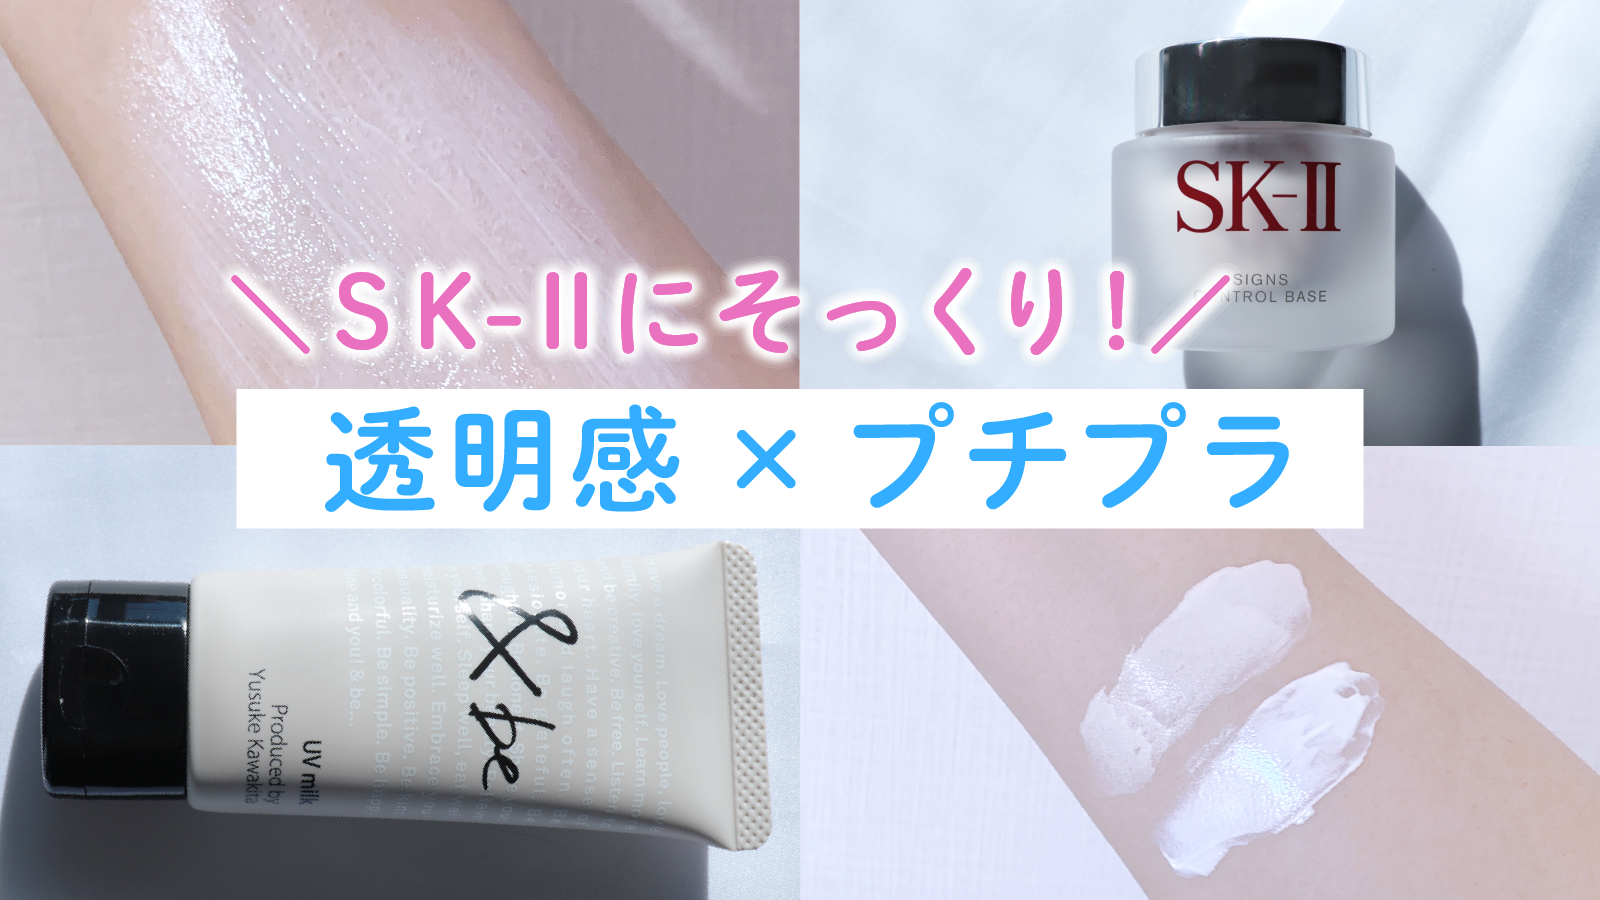 SK-II 廃盤商品 サインズコントロールベース - ベースメイク/化粧品